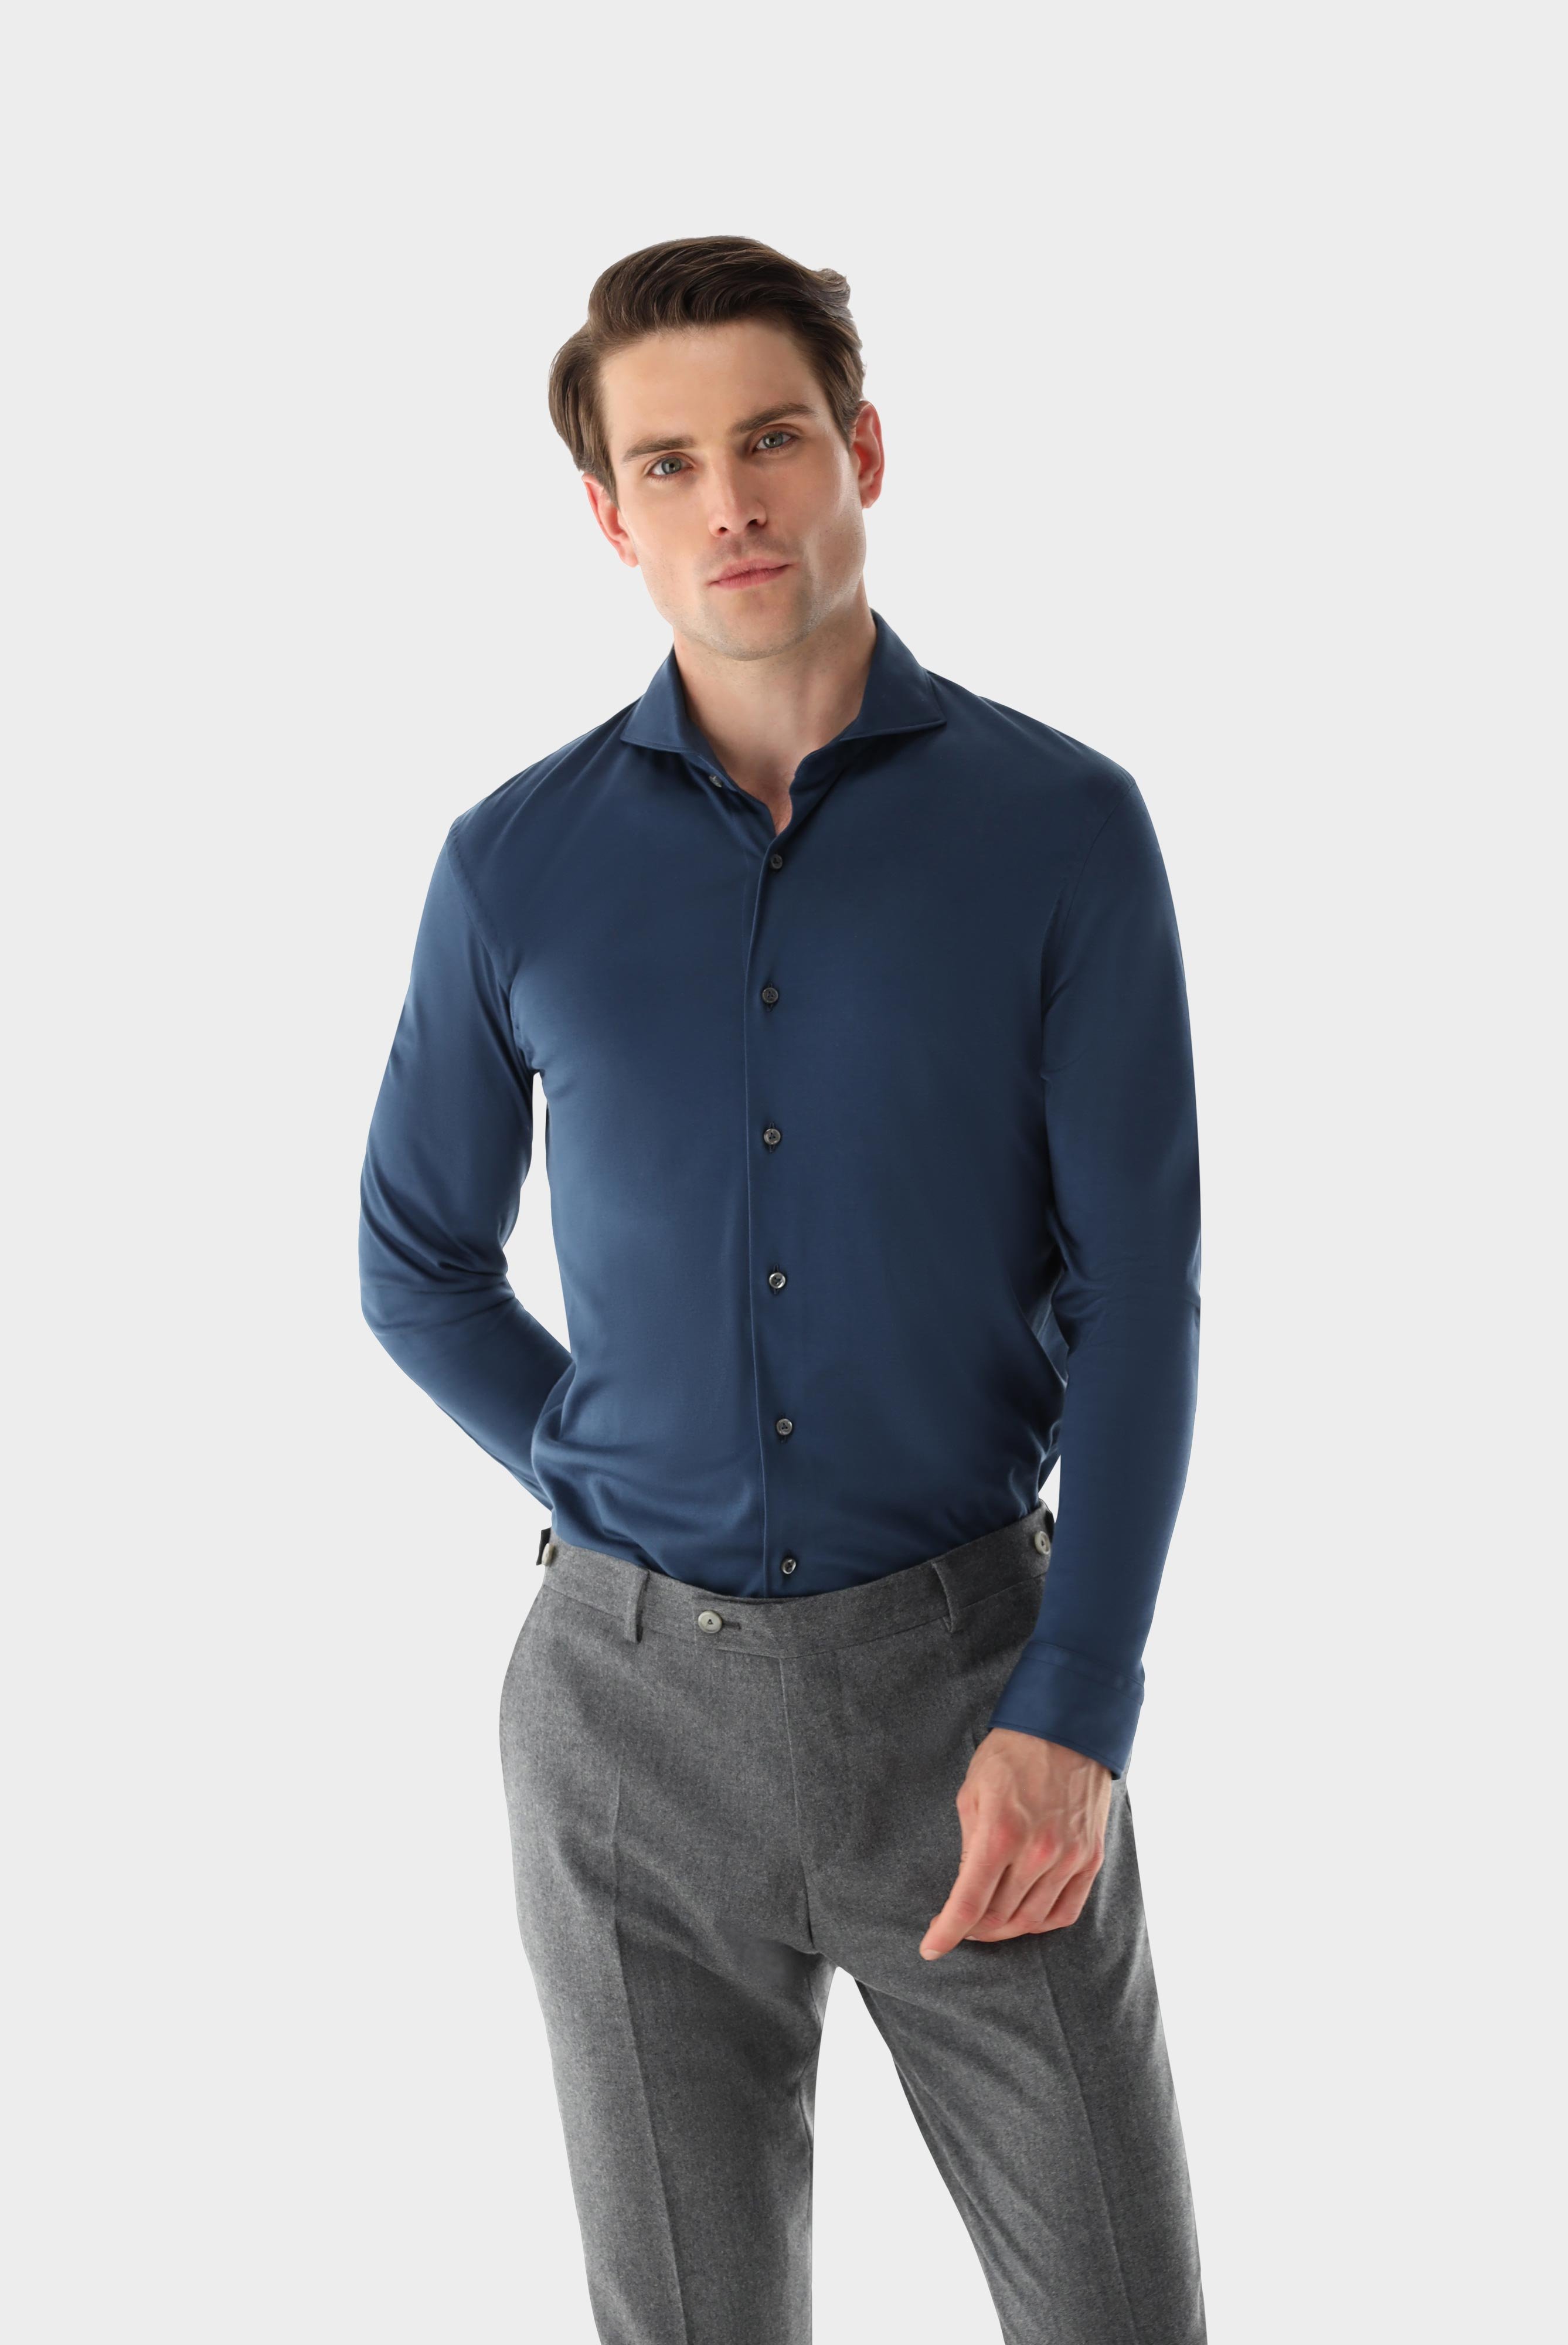 Casual Hemden+Jersey Hemd aus Schweizer Baumwolle Tailor Fit+20.1683.UC.180031.780.M